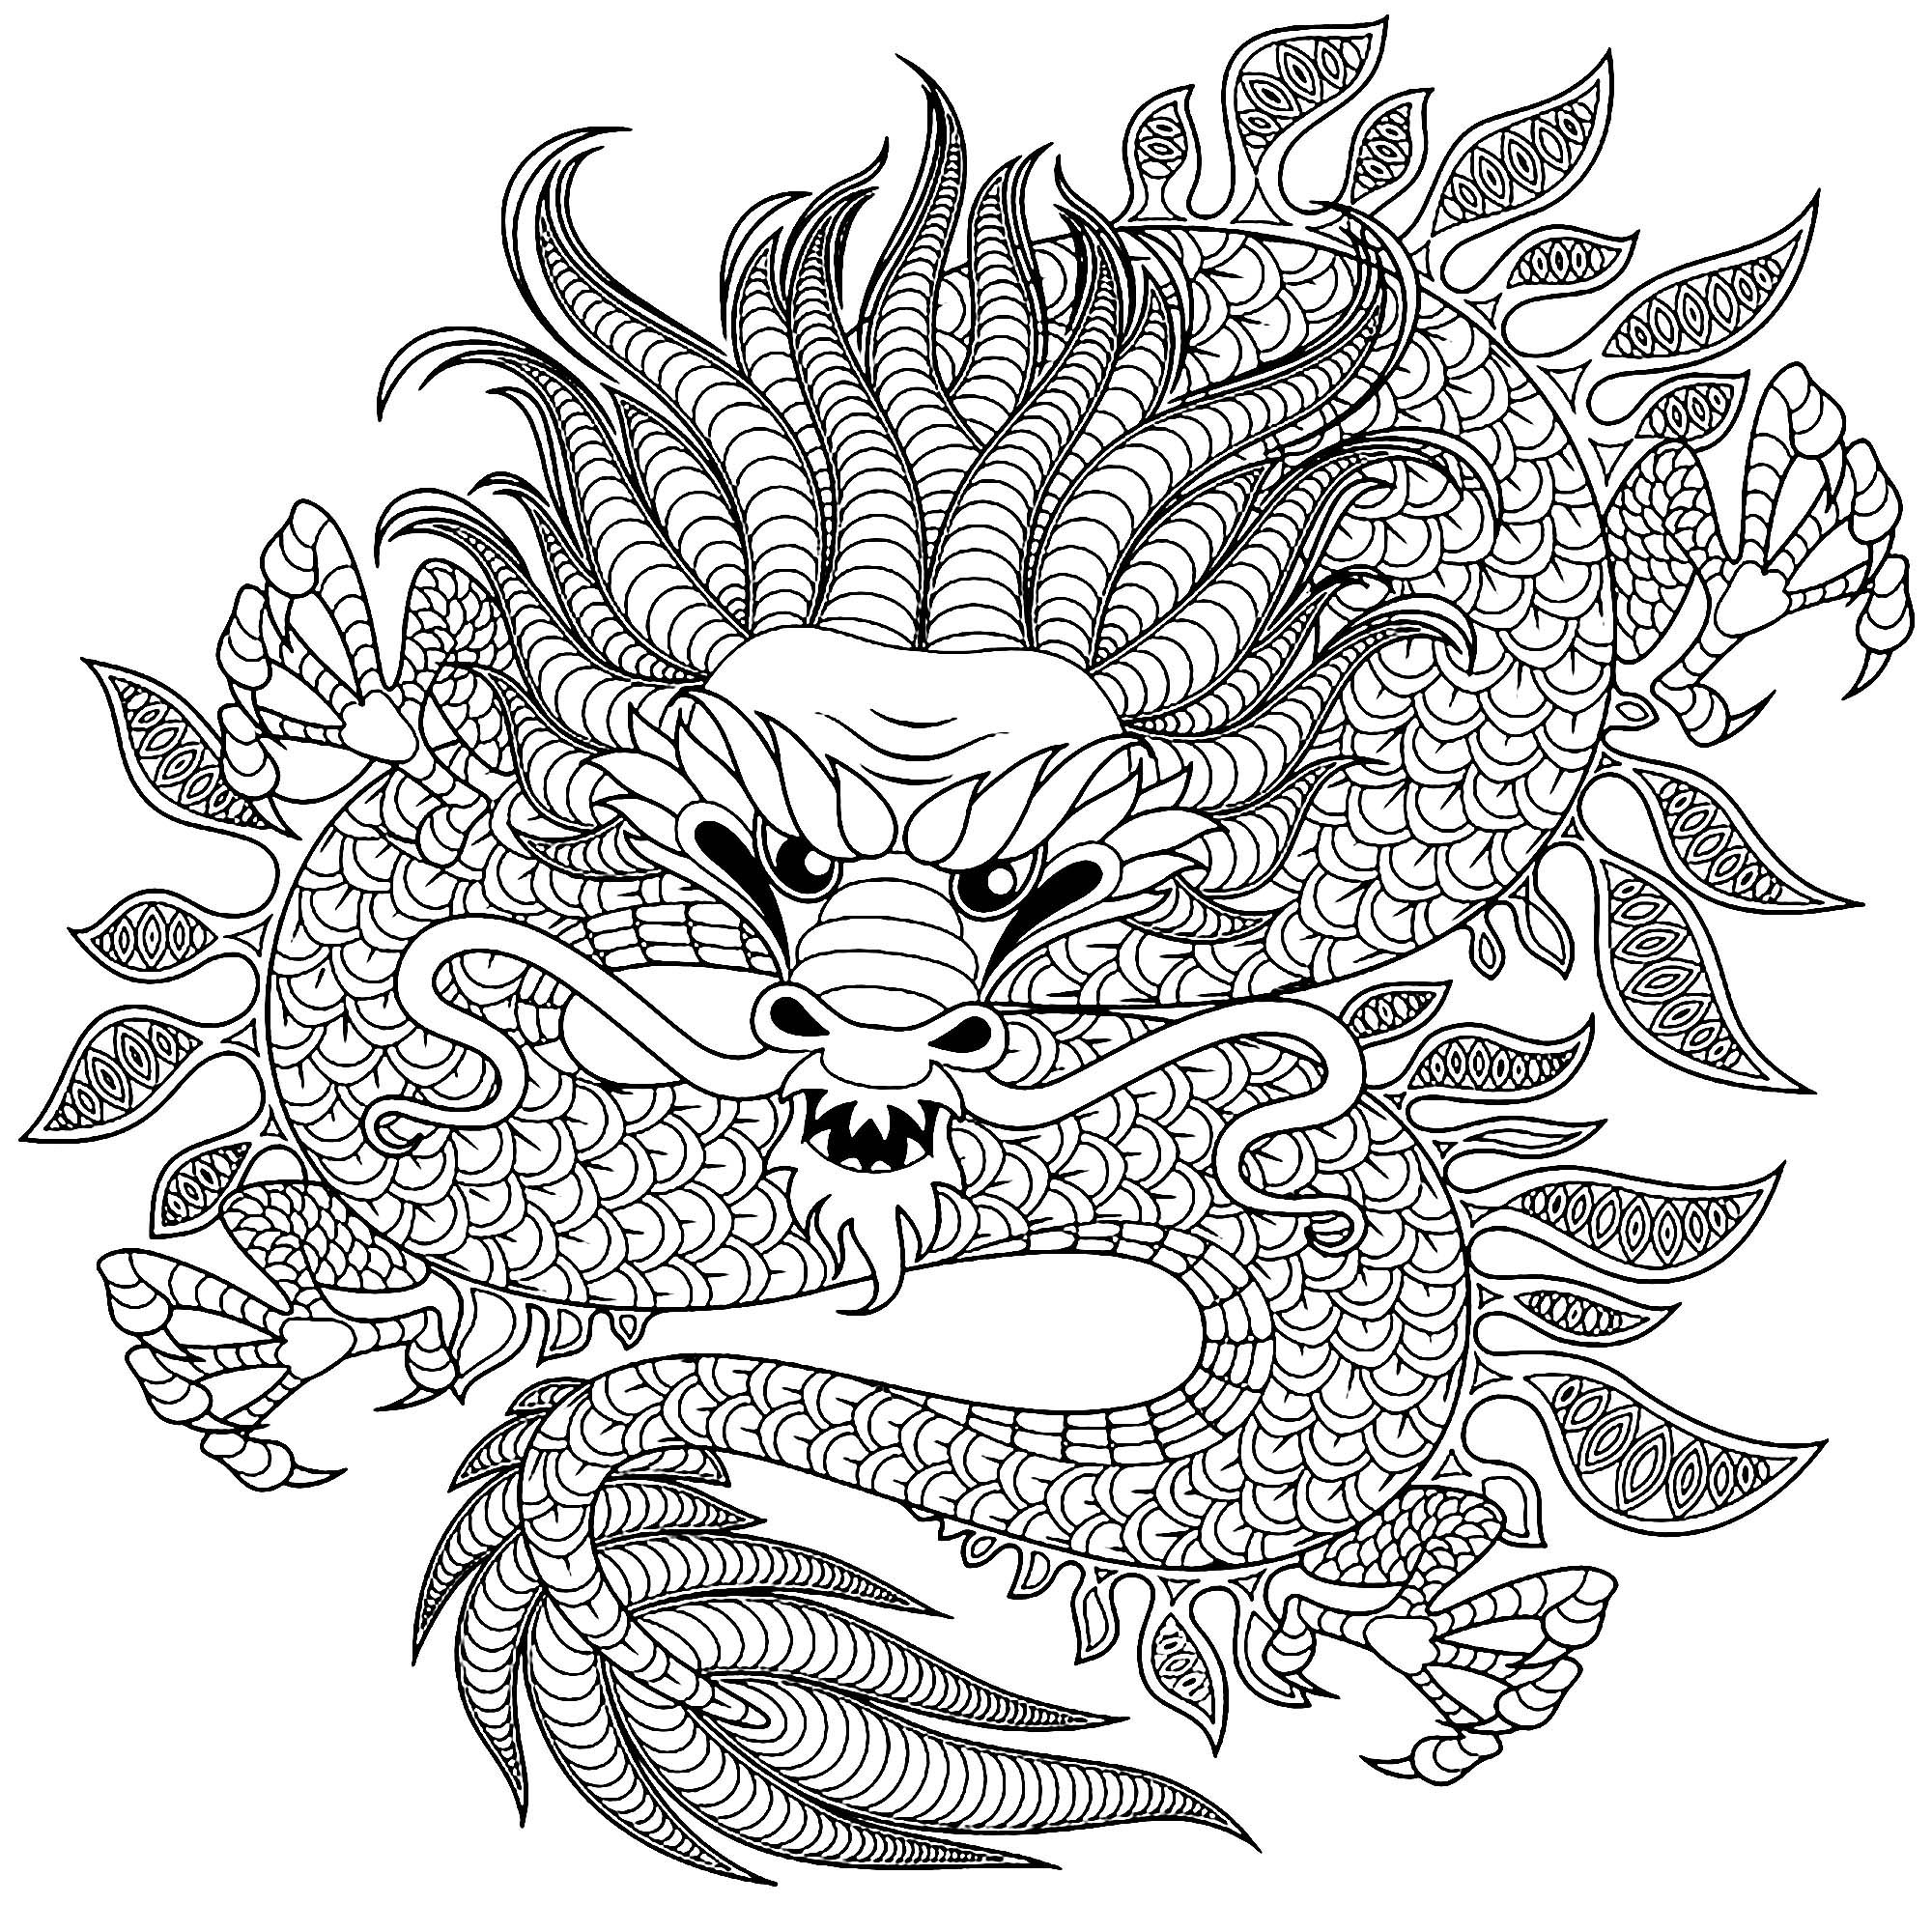 Desenhos para colorir de Dragões para baixar, Fonte : 123rf   Artista : alka5051